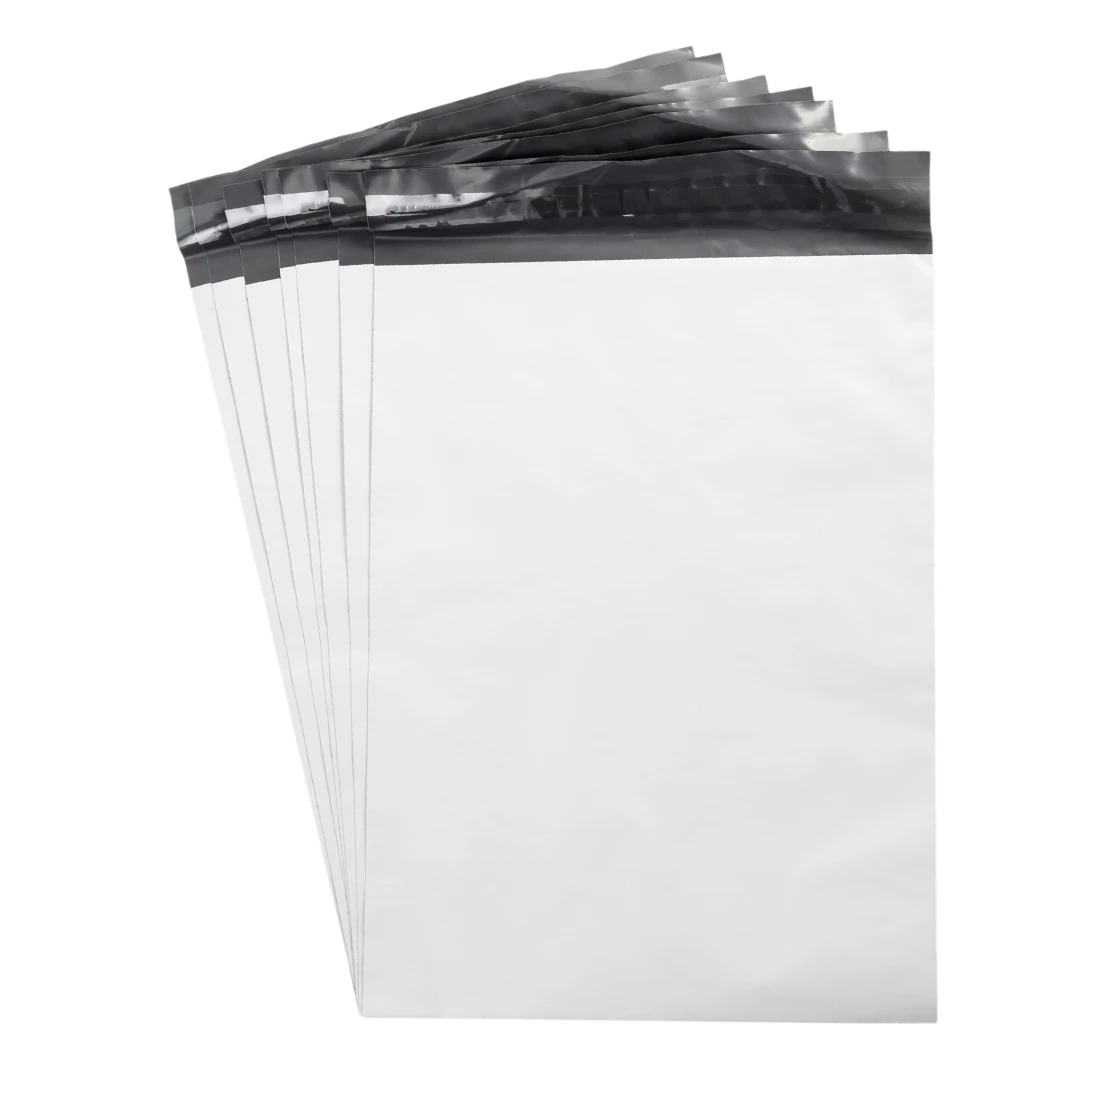 Bublaki courier foil pack 45 x 55 cm (55 μm) 4XL - set of 100 pcs.